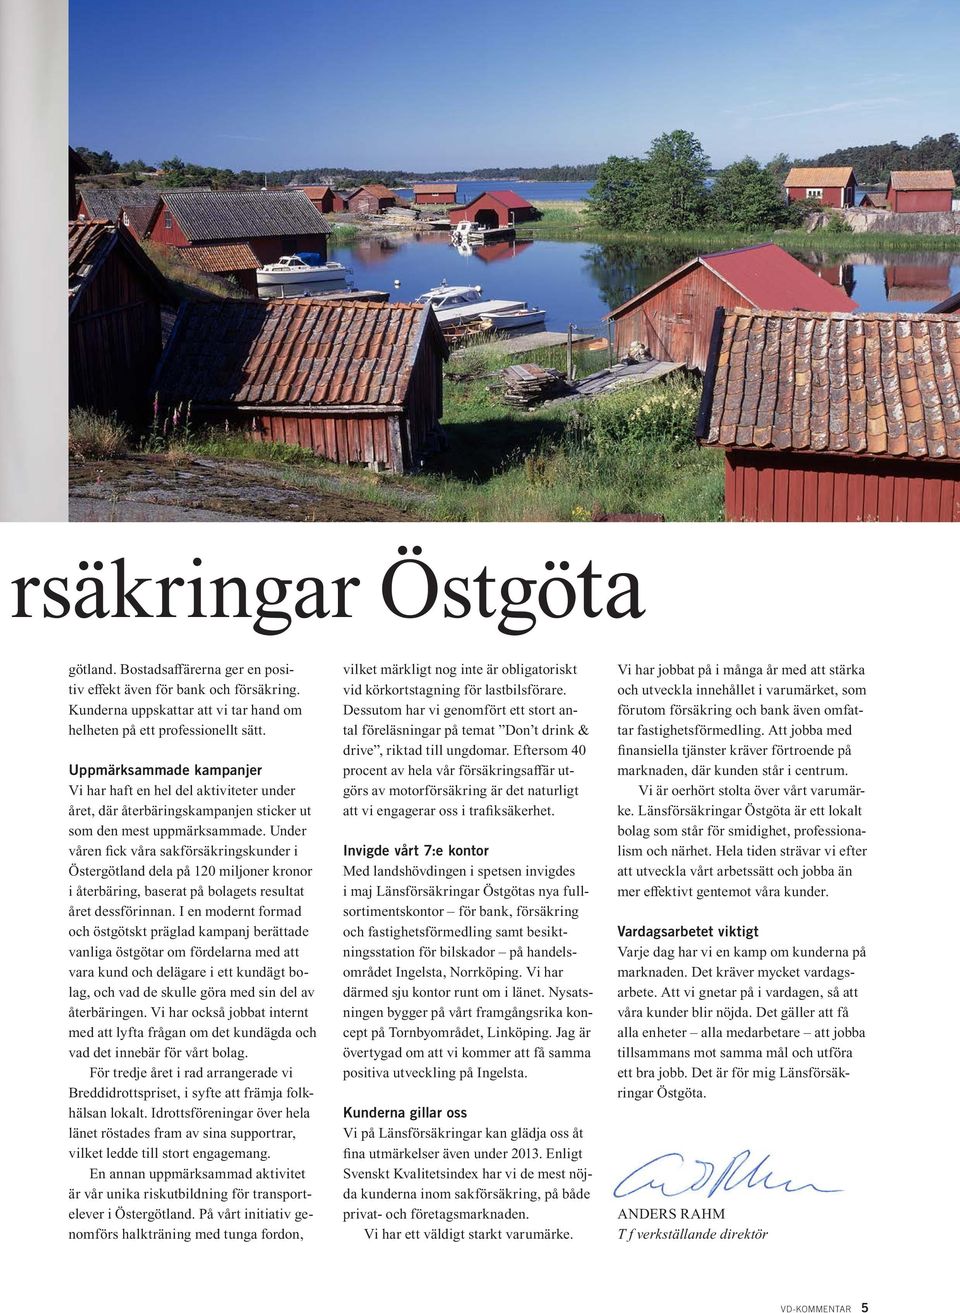 Under våren fick våra sakförsäkringskunder i Östergötland dela på 120 miljoner kronor i återbäring, baserat på bolagets resultat året dessförinnan.